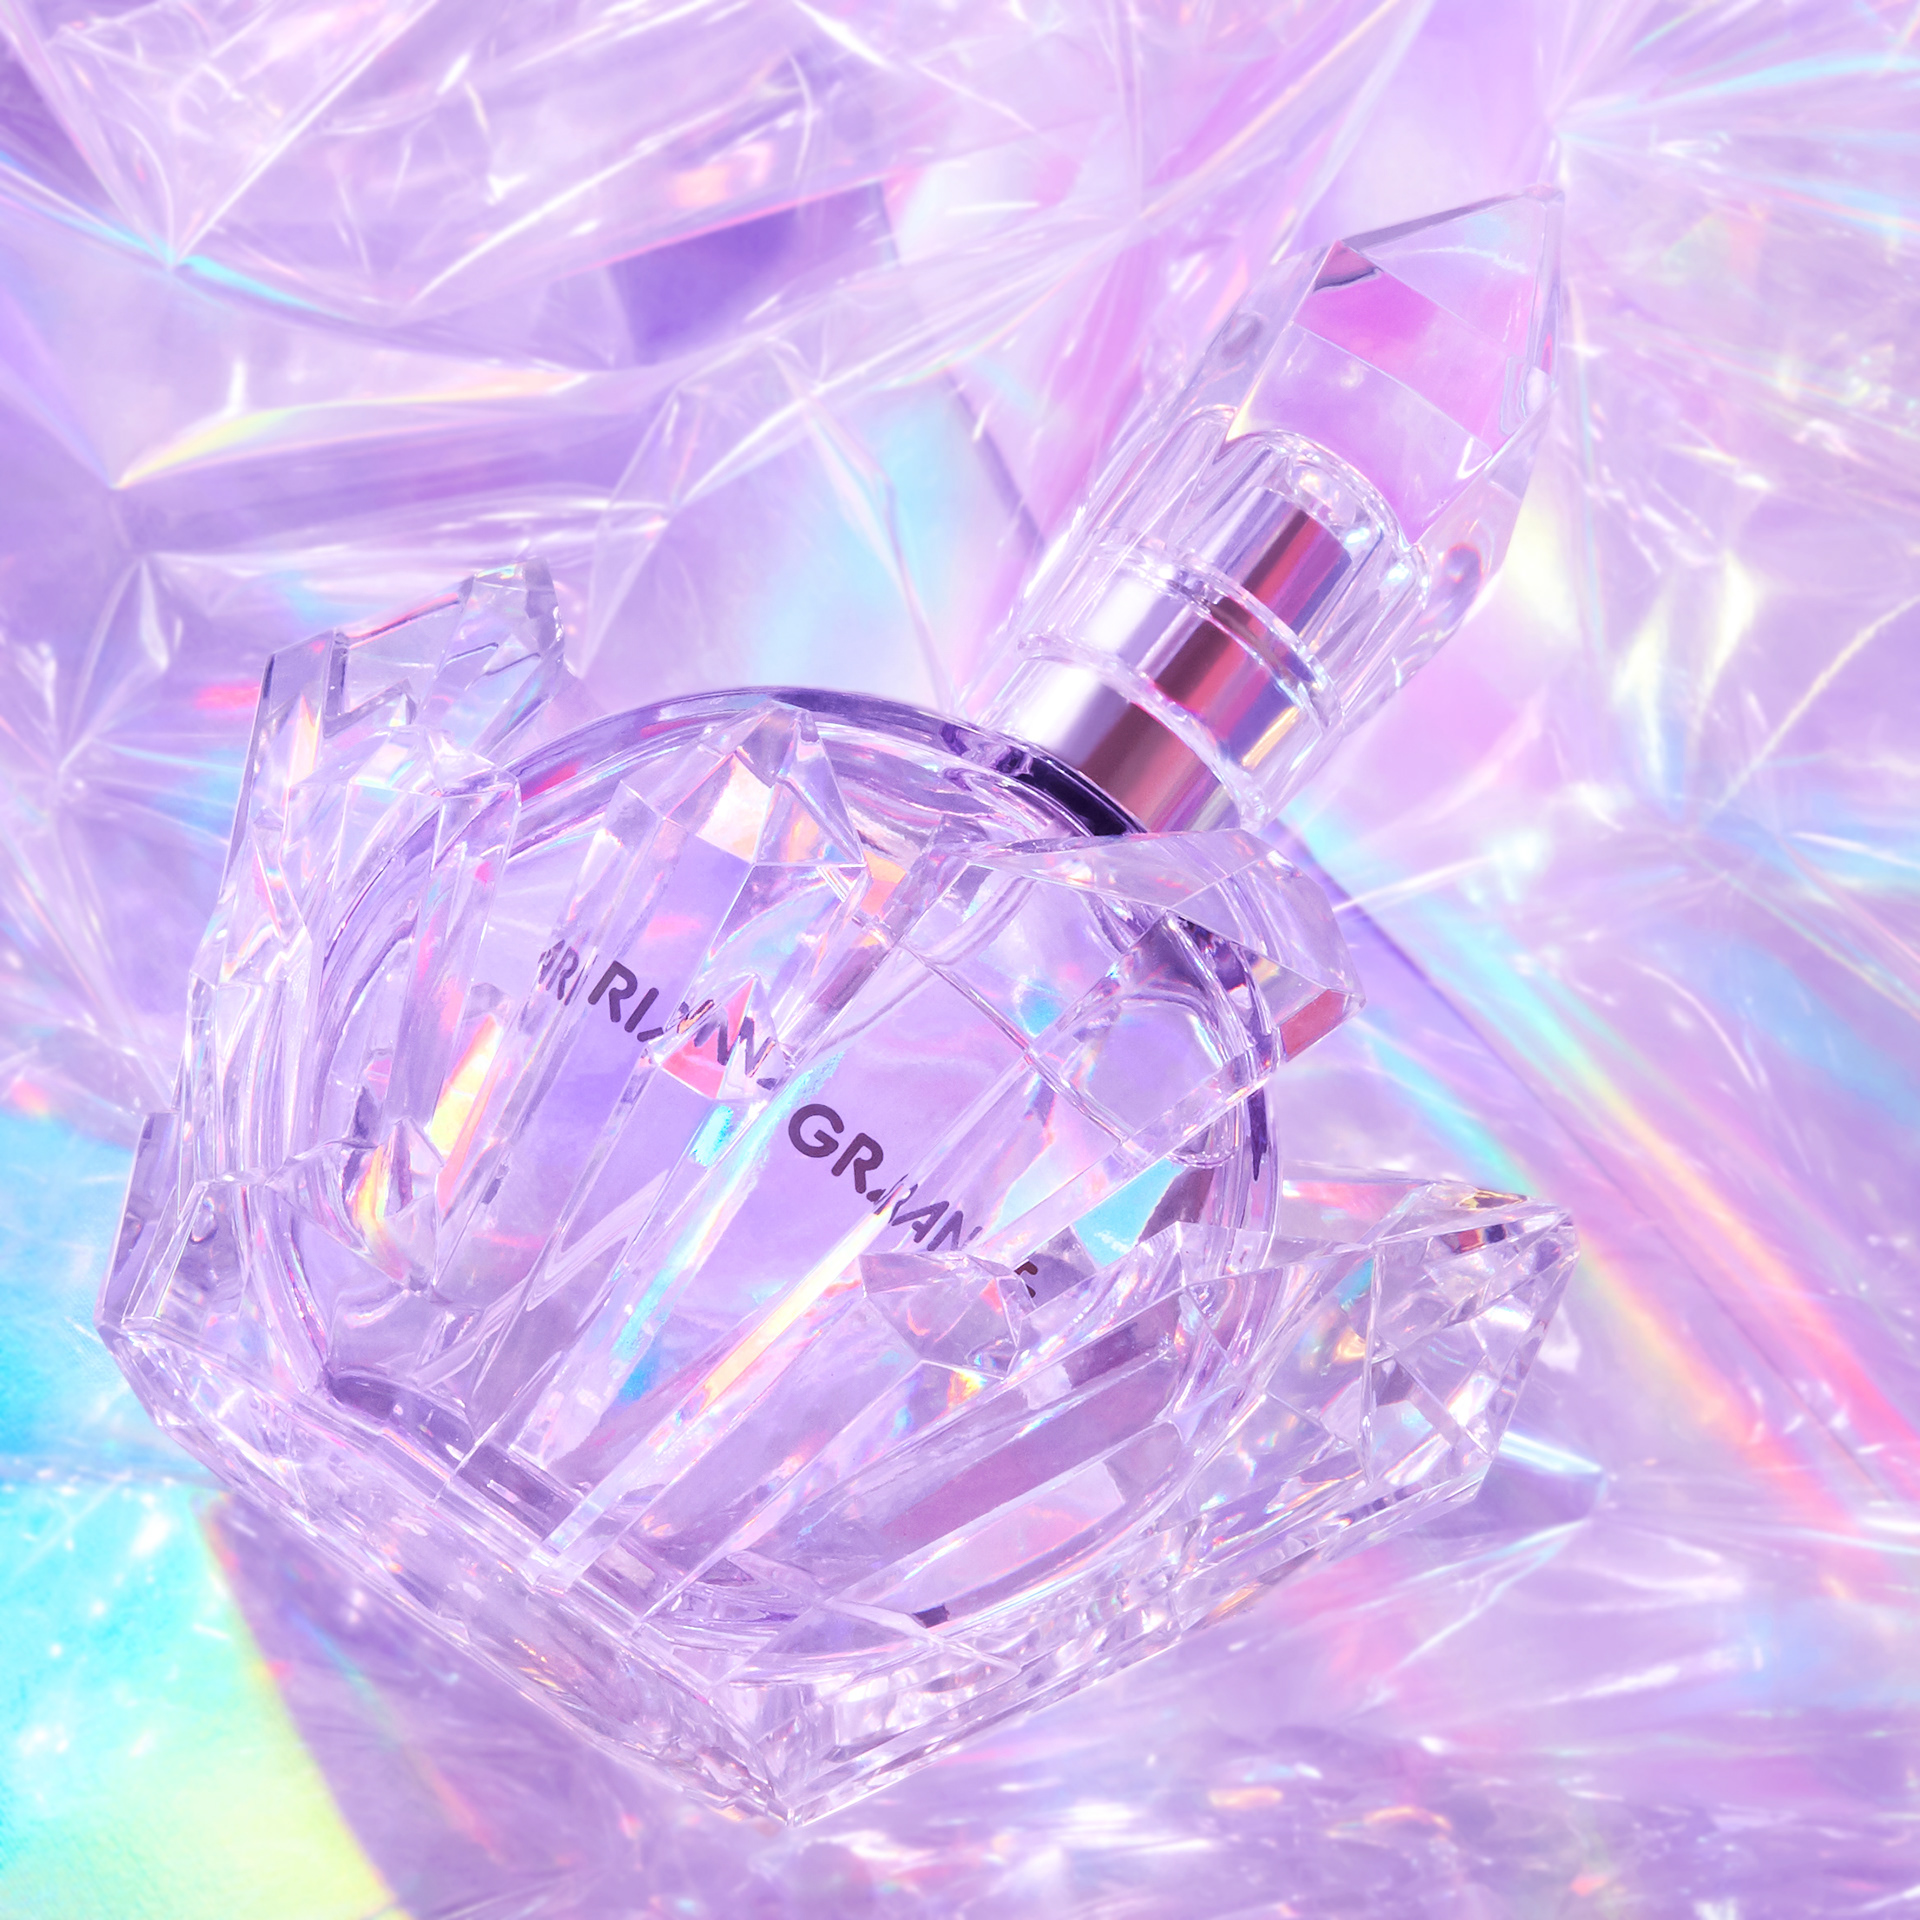 Designer Parfums Ariana Grande